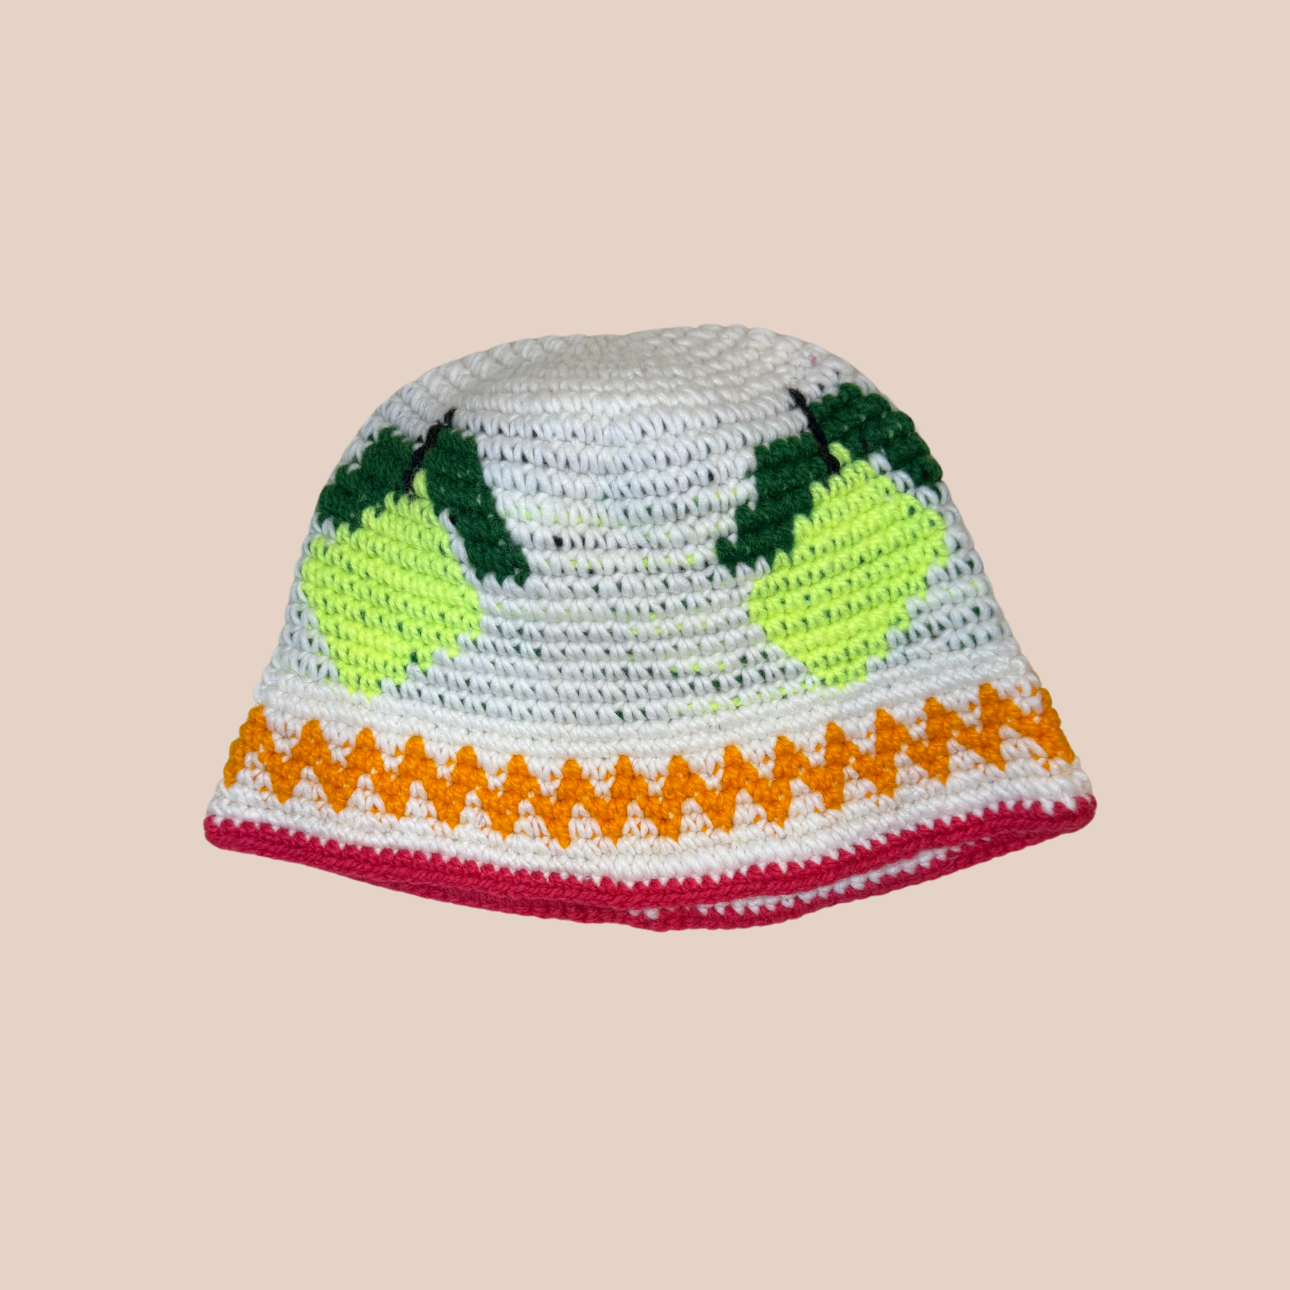 Image du bucket hat motifs citron de Maison Badigo, bucket hat (bob) unique et tendance